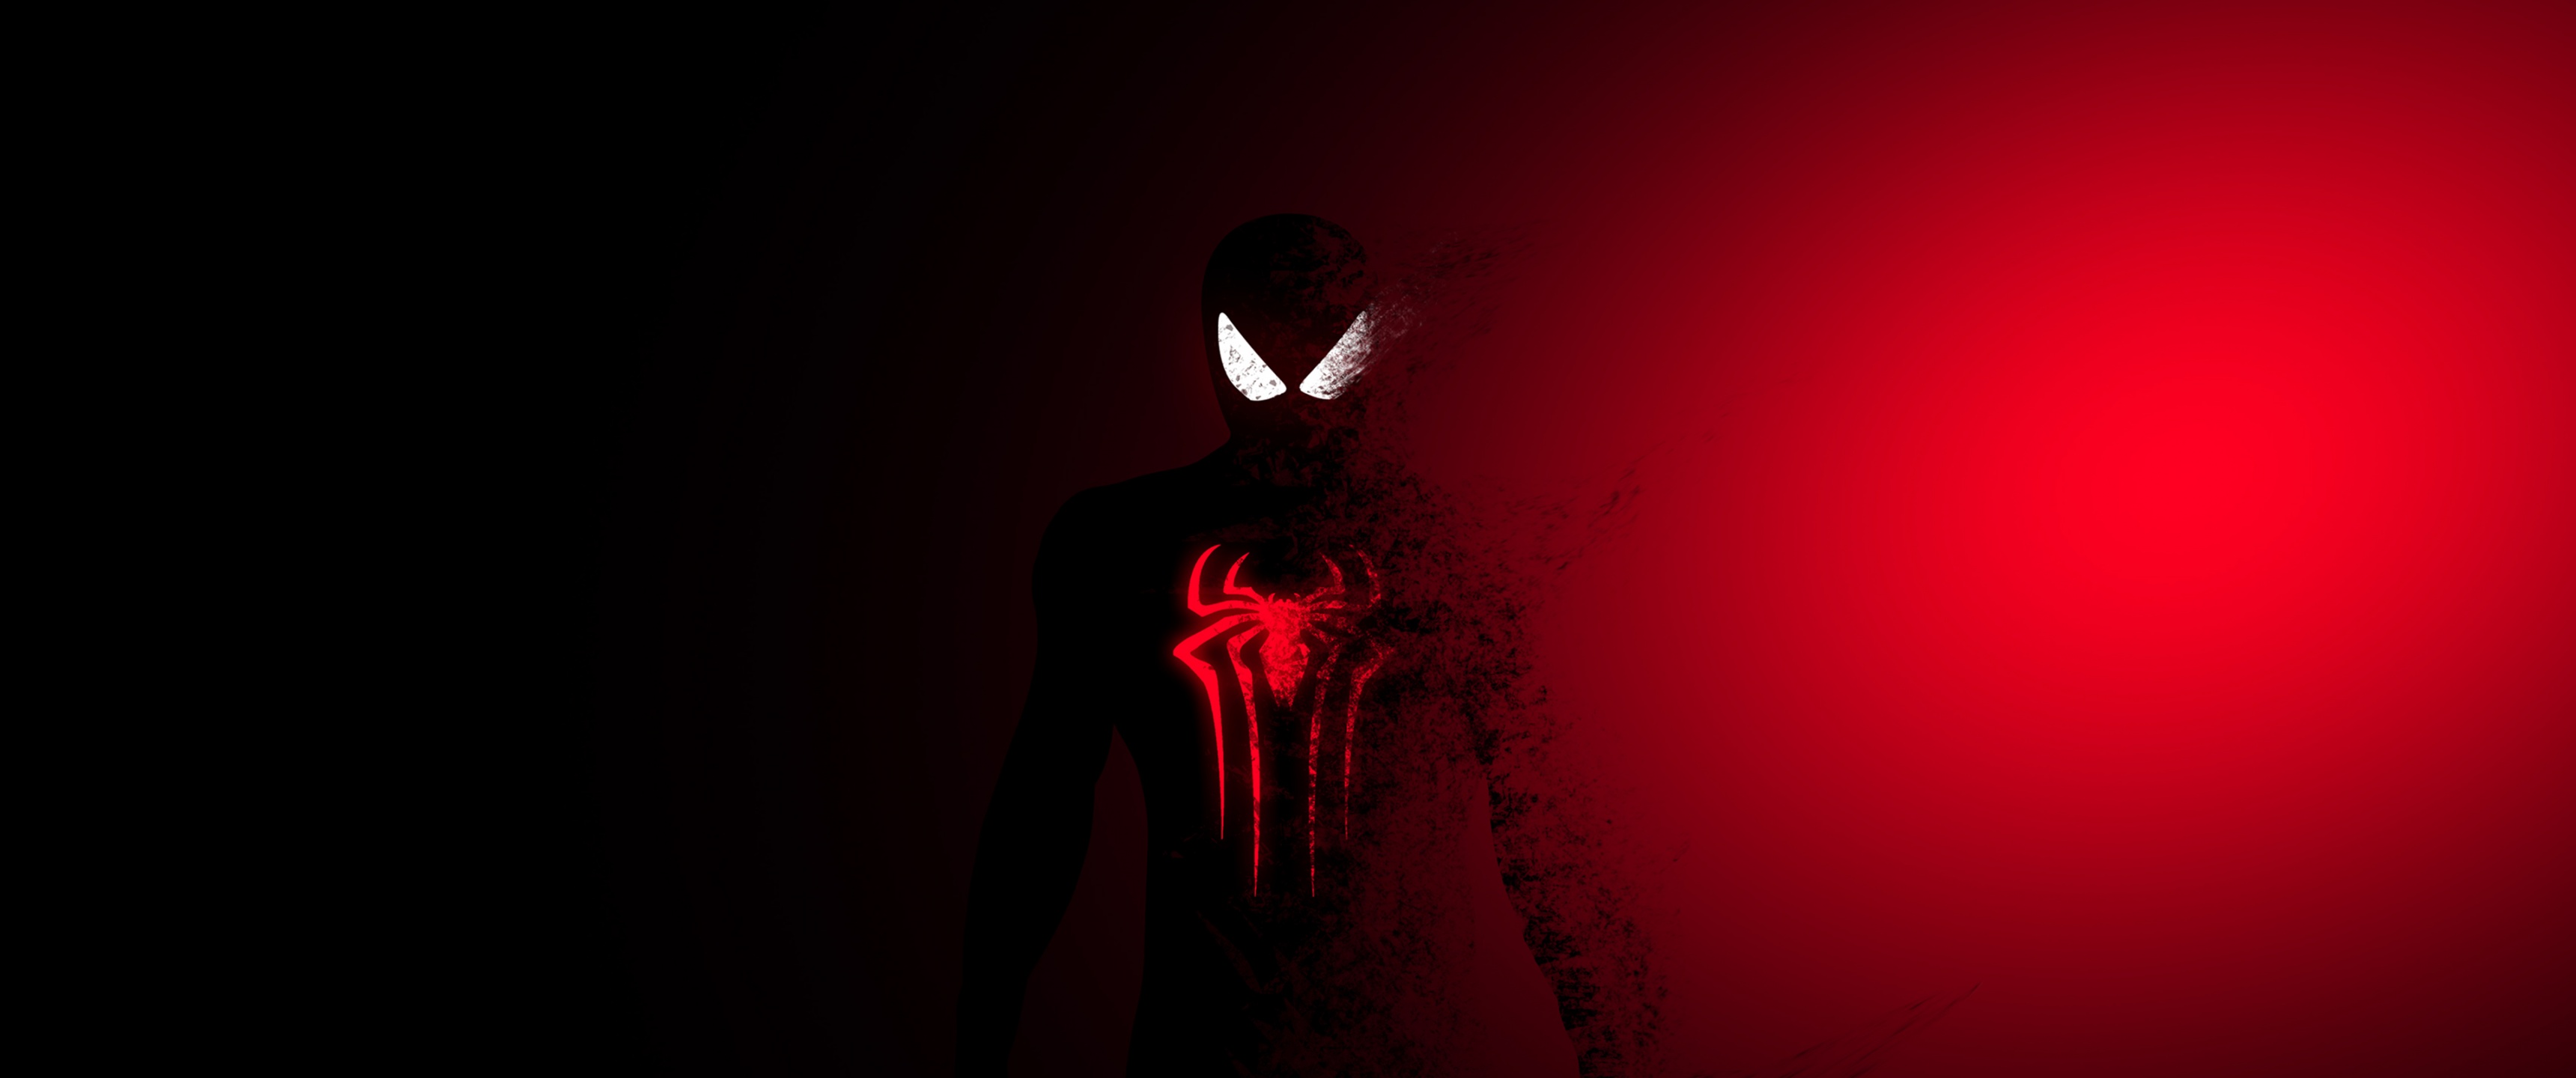 Siêu anh hùng Spider-Man - người tuyệt vời nhất trong Marvel, luôn khiến người xem cảm thấy vô cùng phấn khích và hồi hộp. Hãy cùng đến với hình ảnh này để khám phá thế giới giả tưởng đầy mê hoặc nhất trong vũ trụ Marvel.